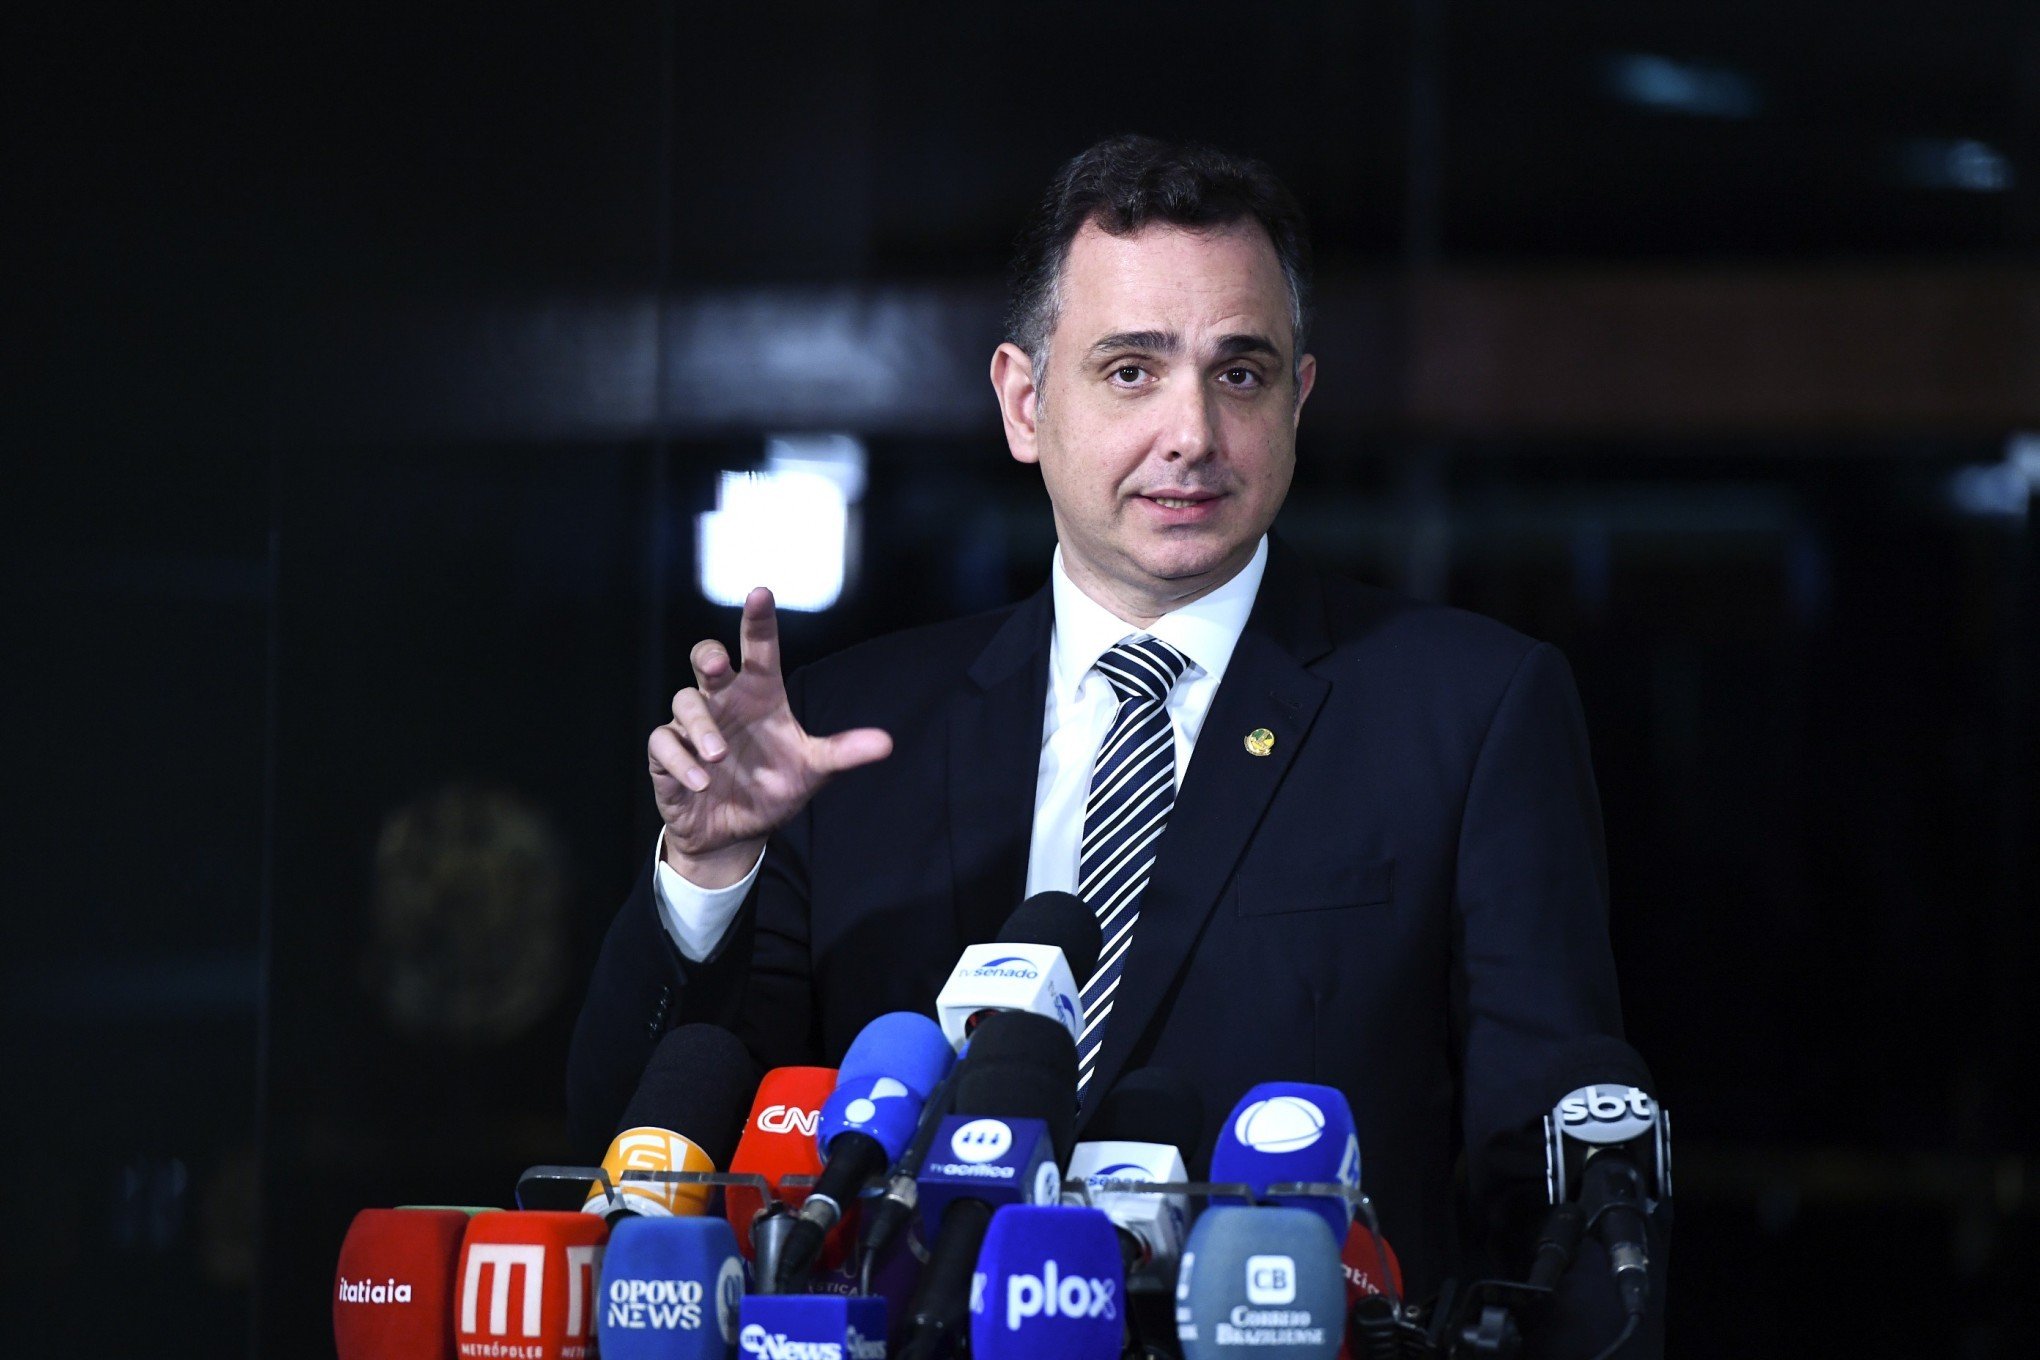 DESONERAÇÃO DA FOLHA: Pacheco diz na Suíça que há acordo para revogar MP da reoneração